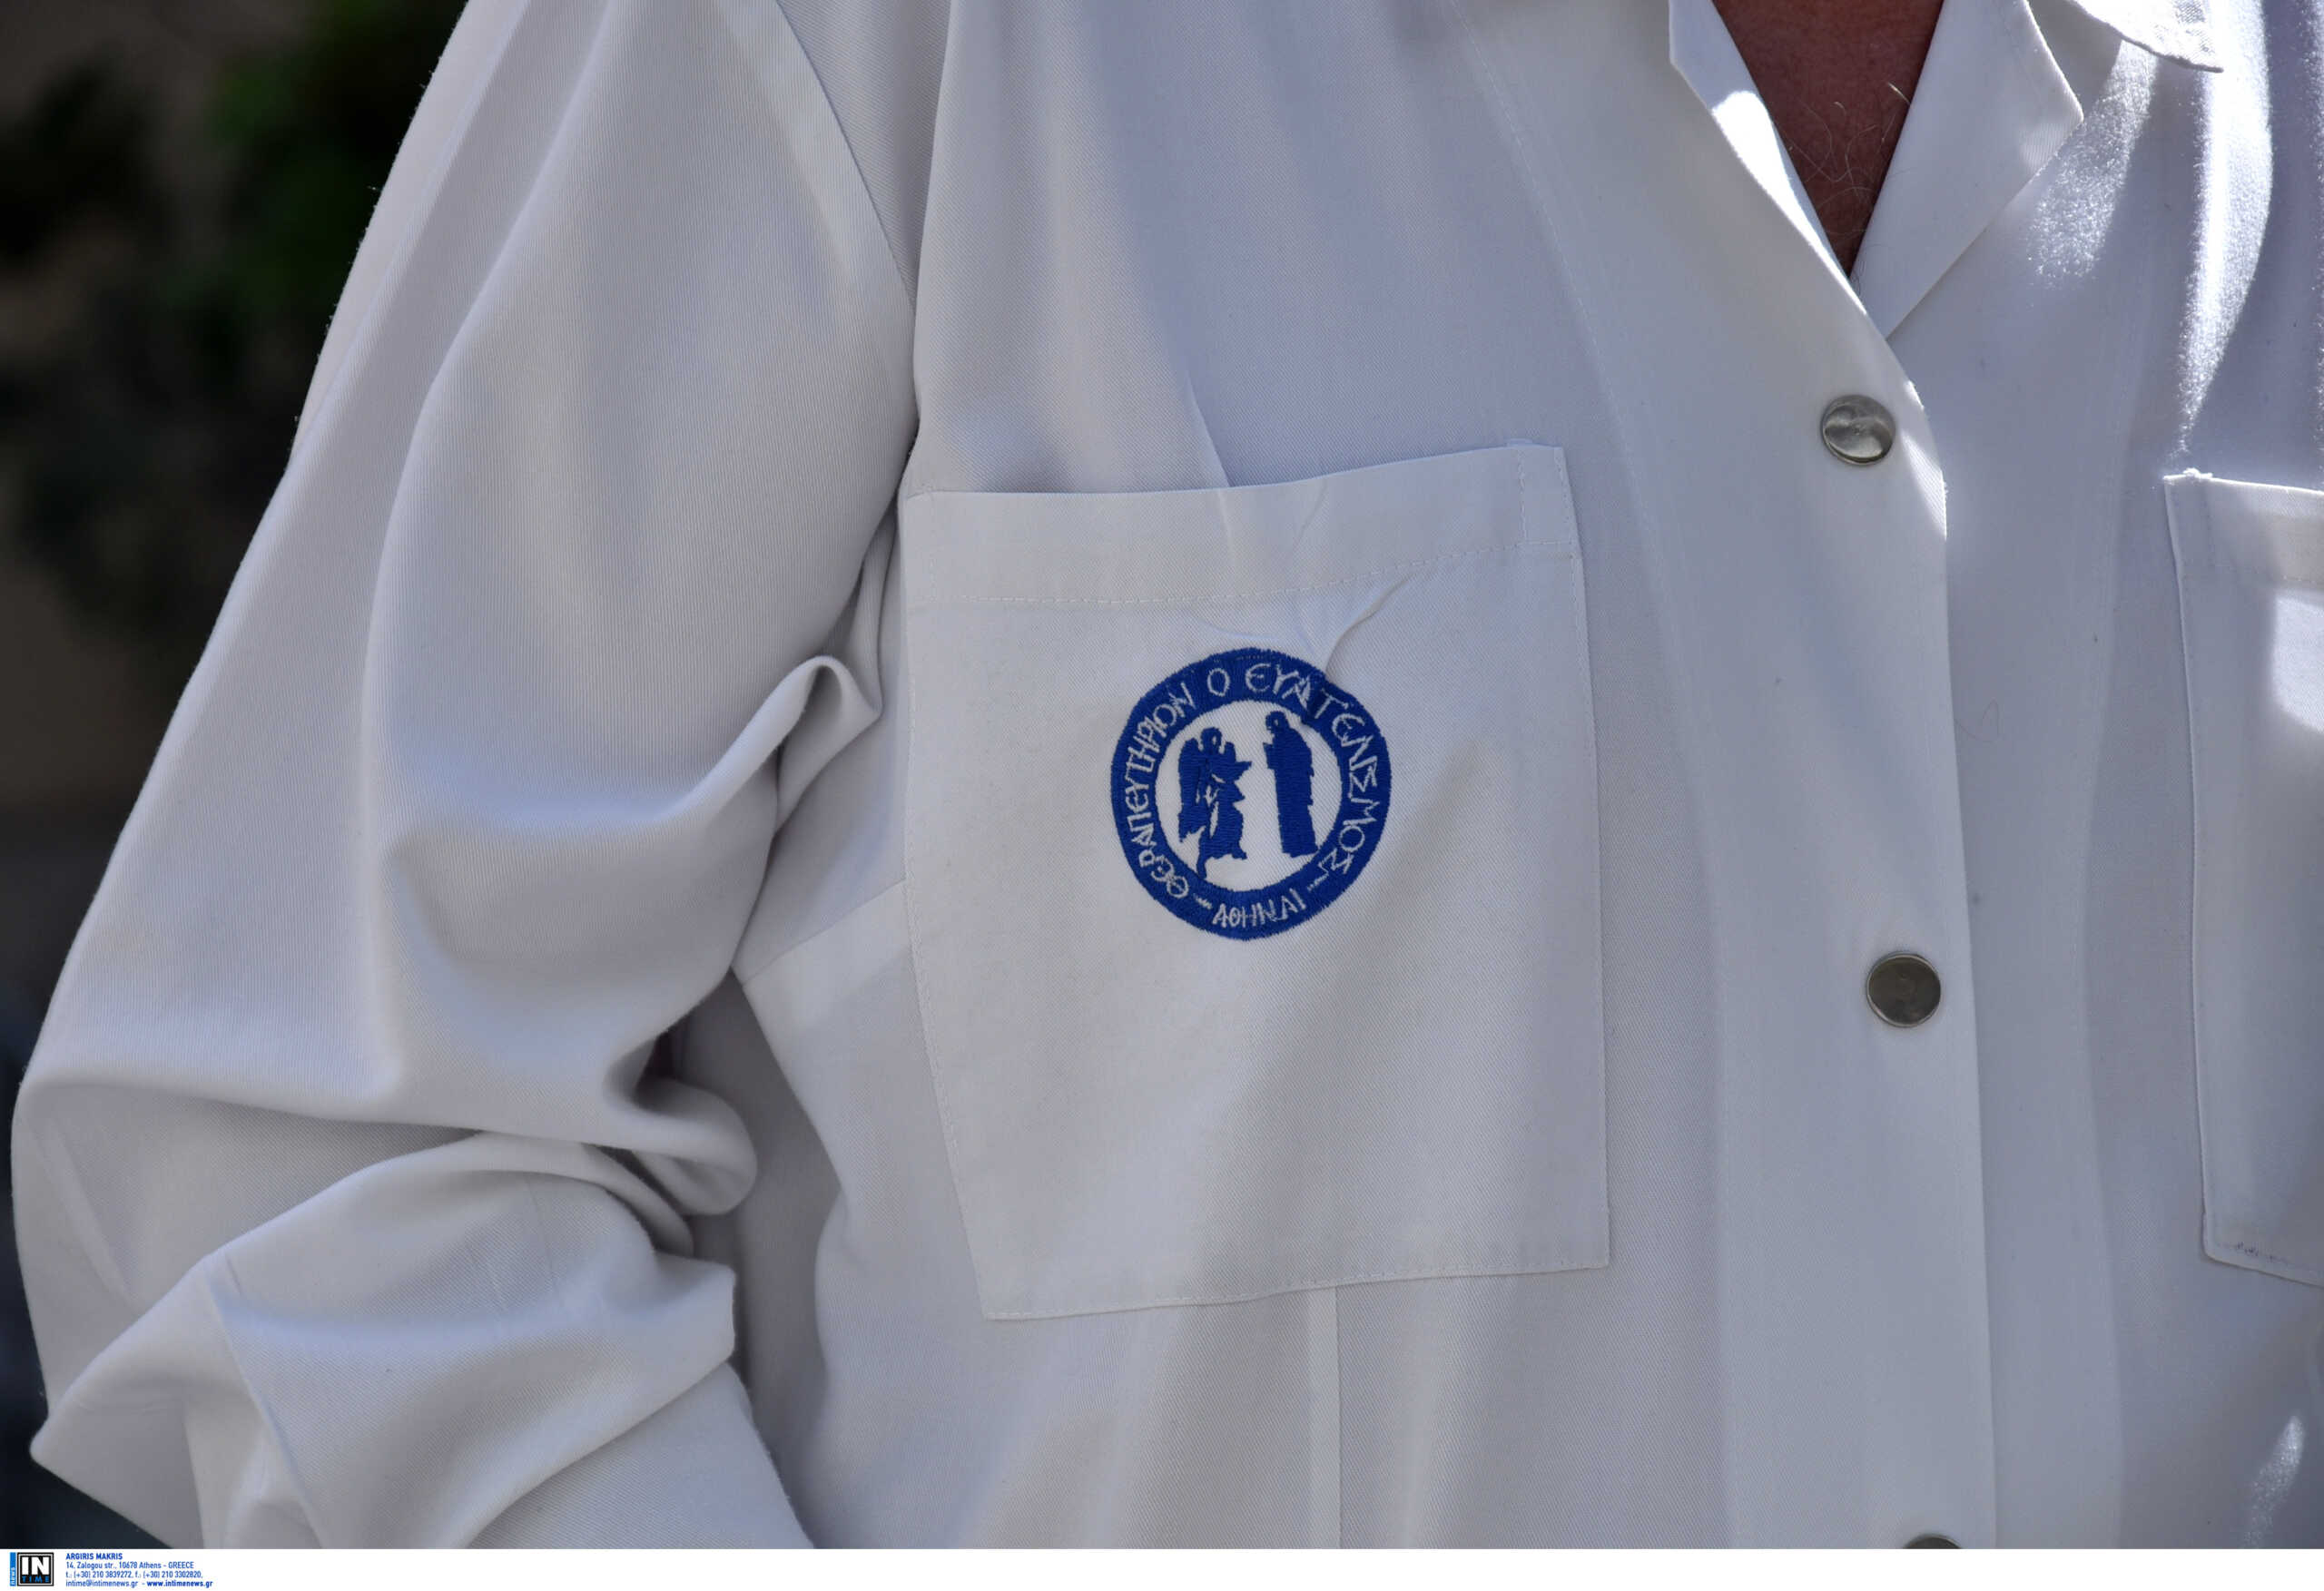 Προσωπικός Γιατρός: Oι Ιατρικοί Σύλλογοι μετά την εξάντληση διαθεσιμότητας – «Ελεύθερη επιλογή για όλους τους γιατρούς»